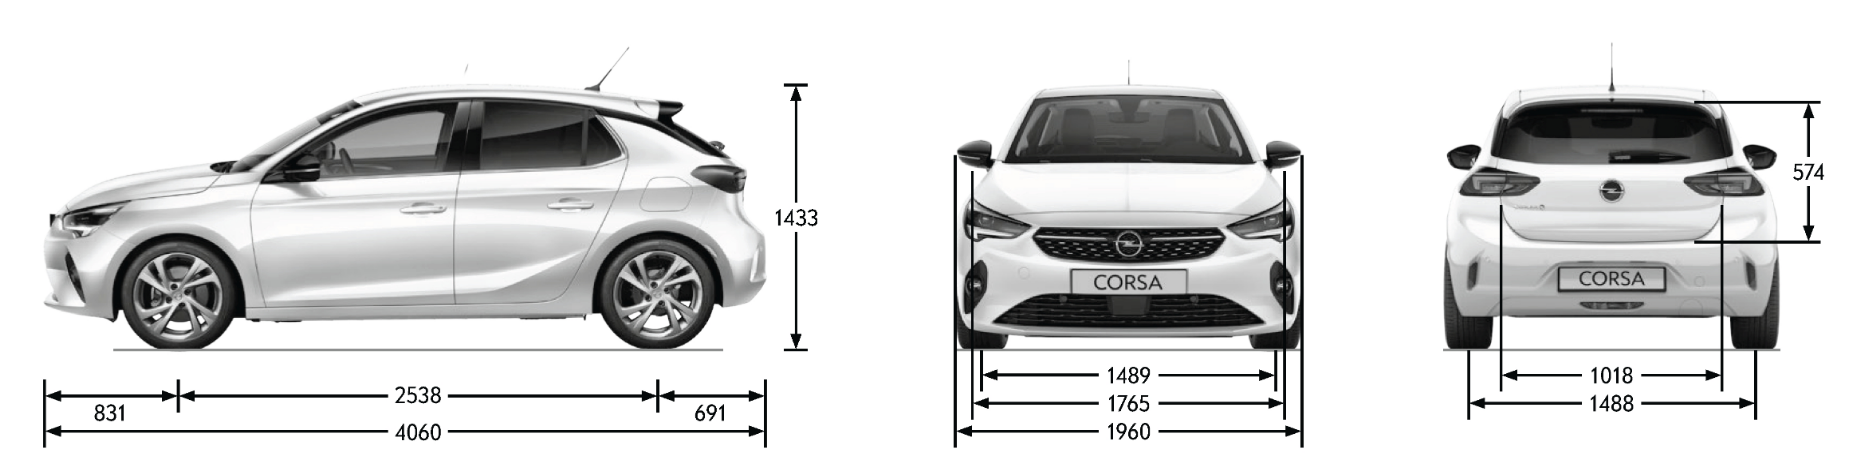 Opel Corsa - rozmiary